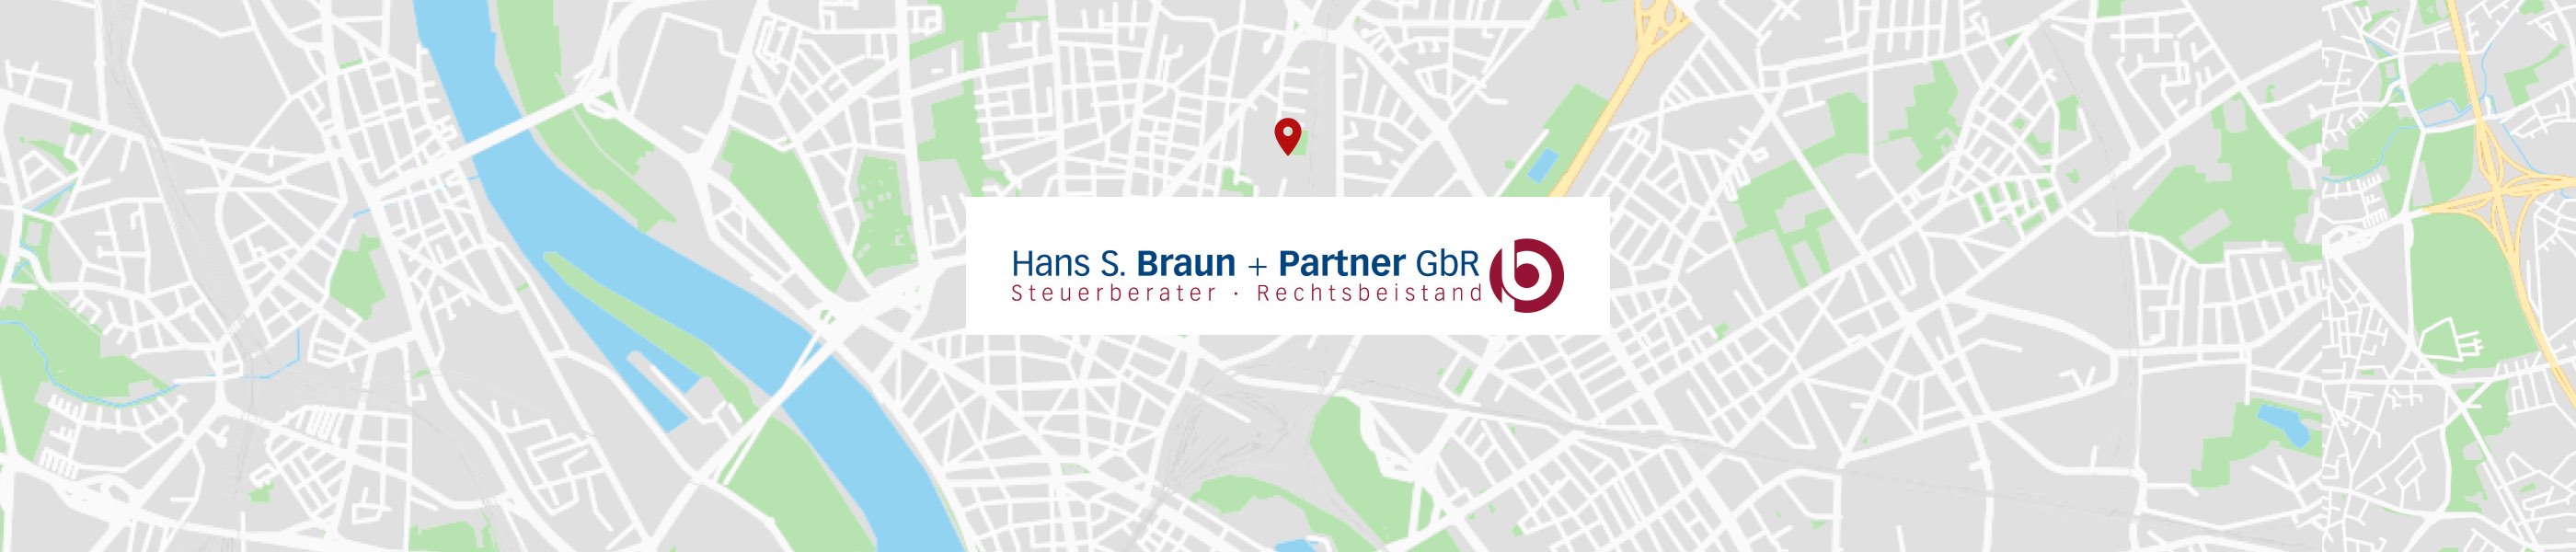 Hans S. Braun + Partner GbR